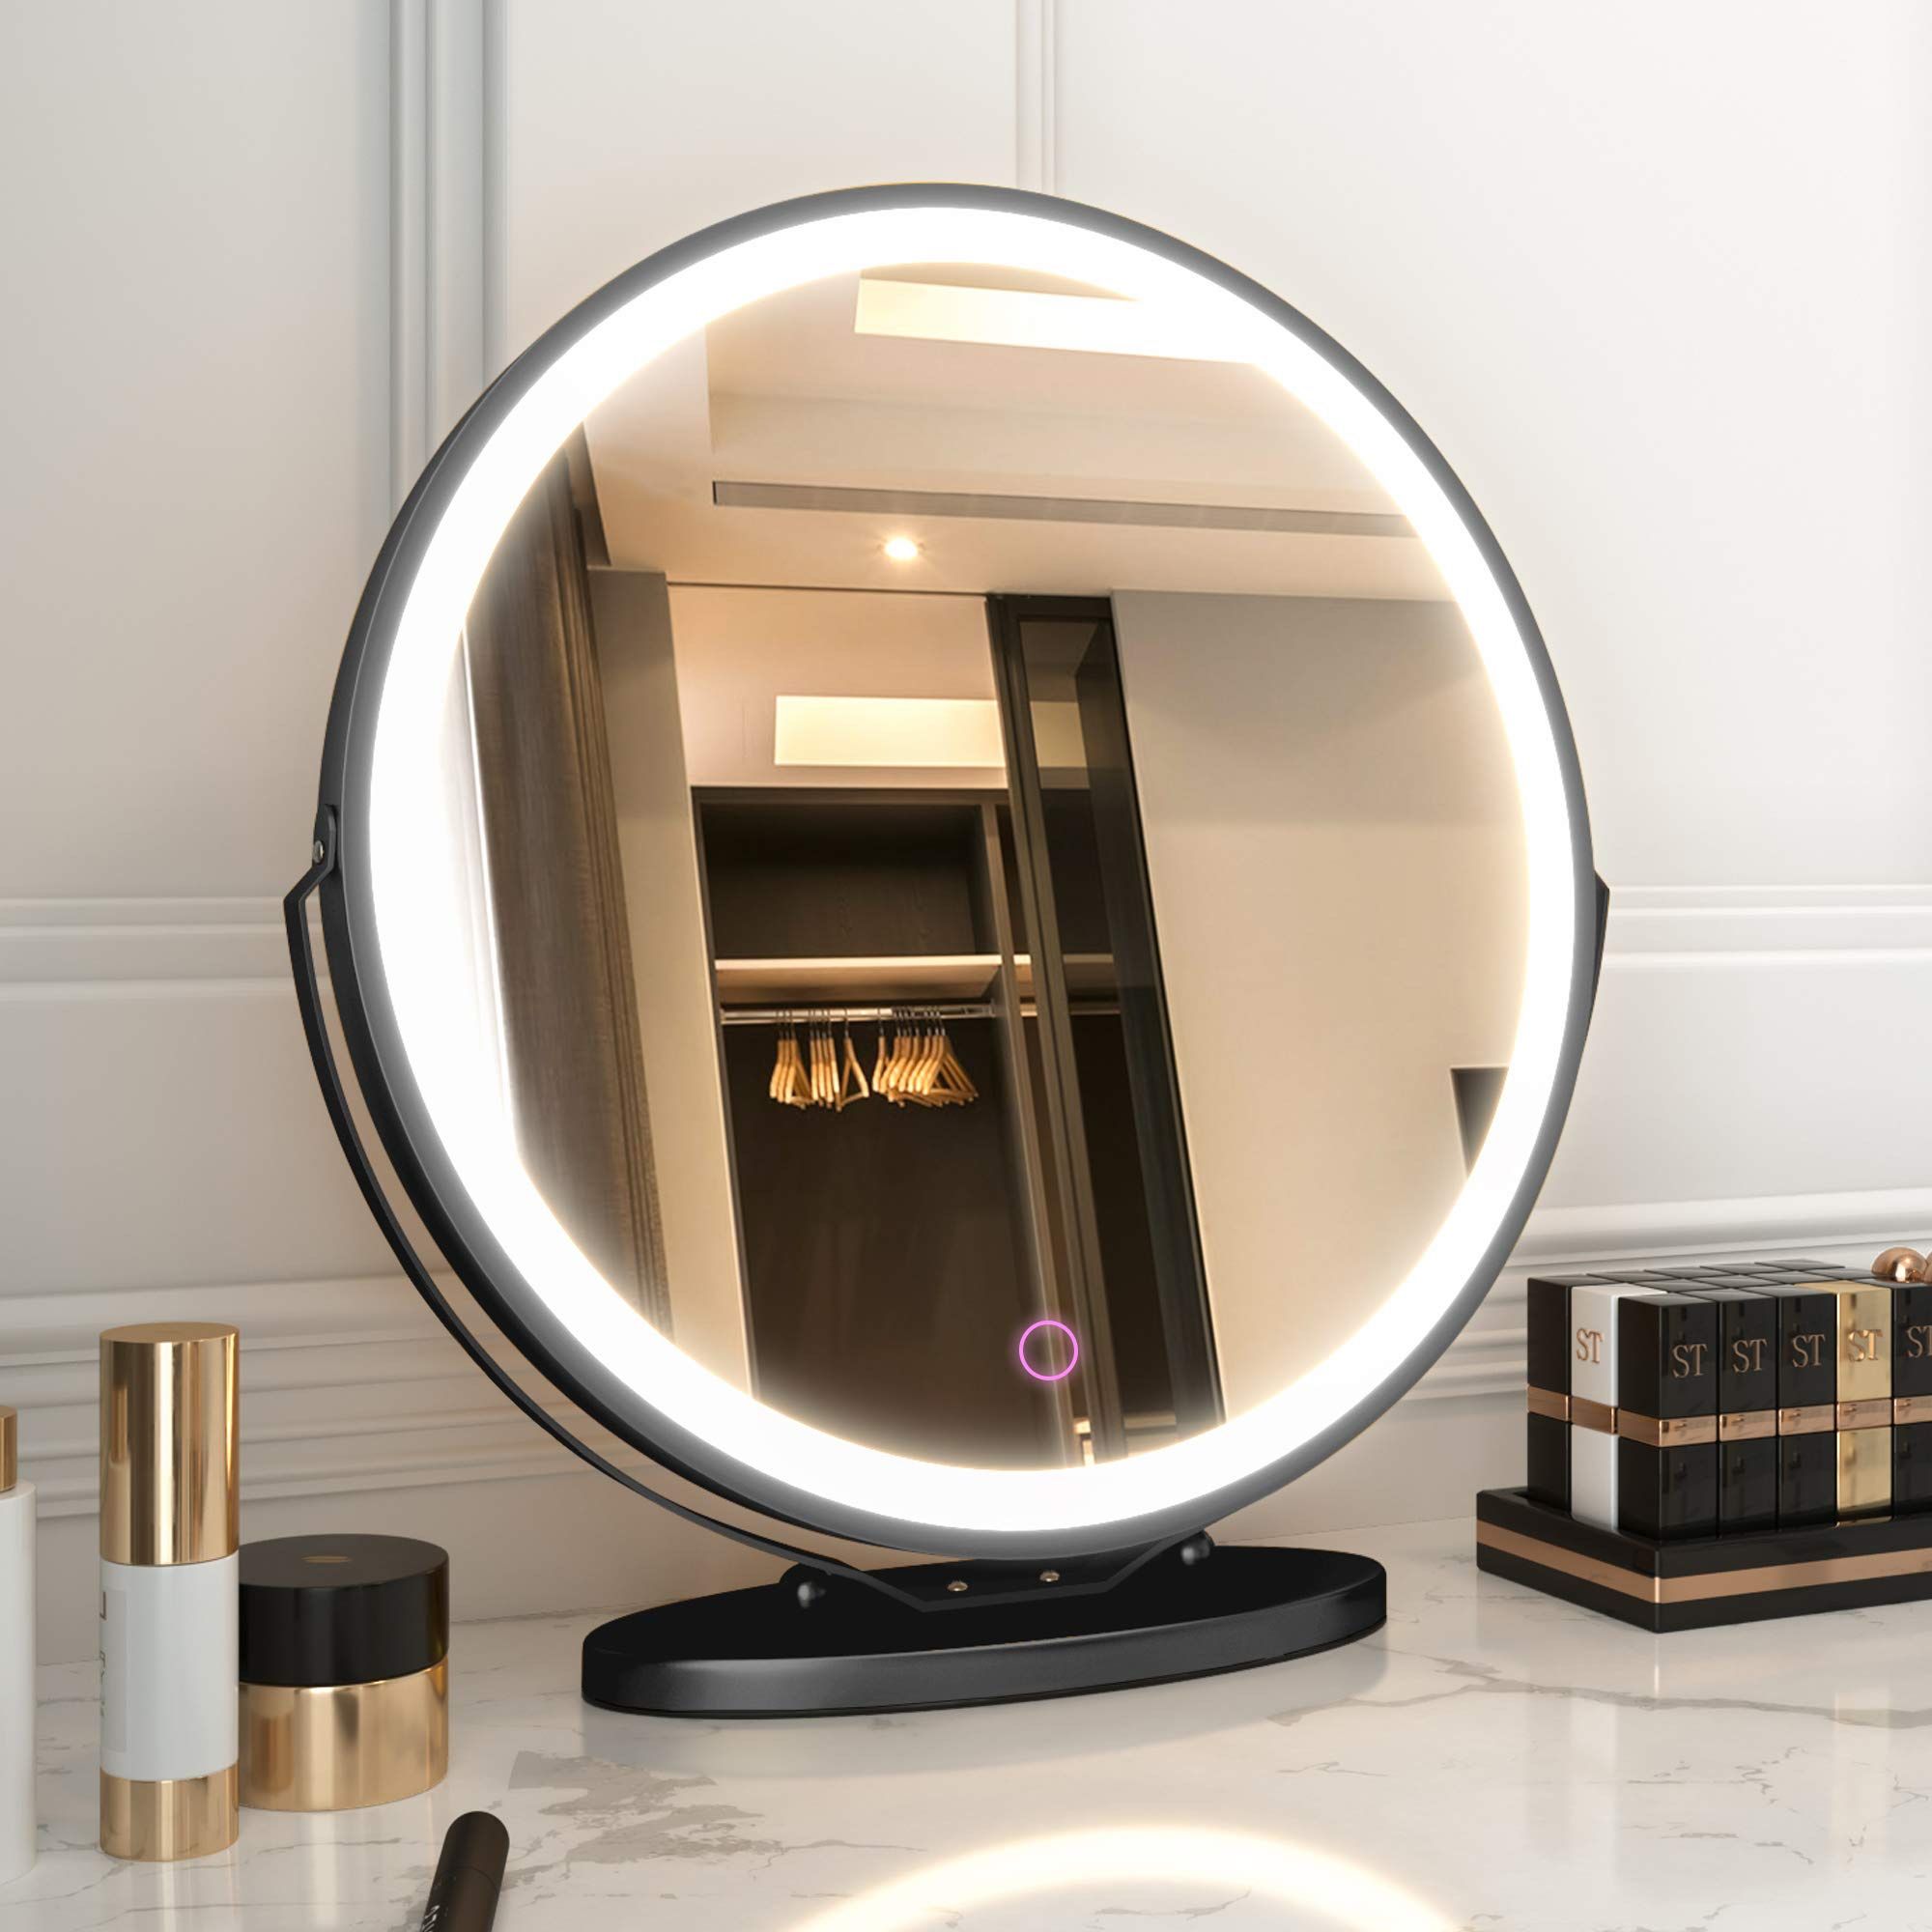  Vanity Makeup Mirror With Lights